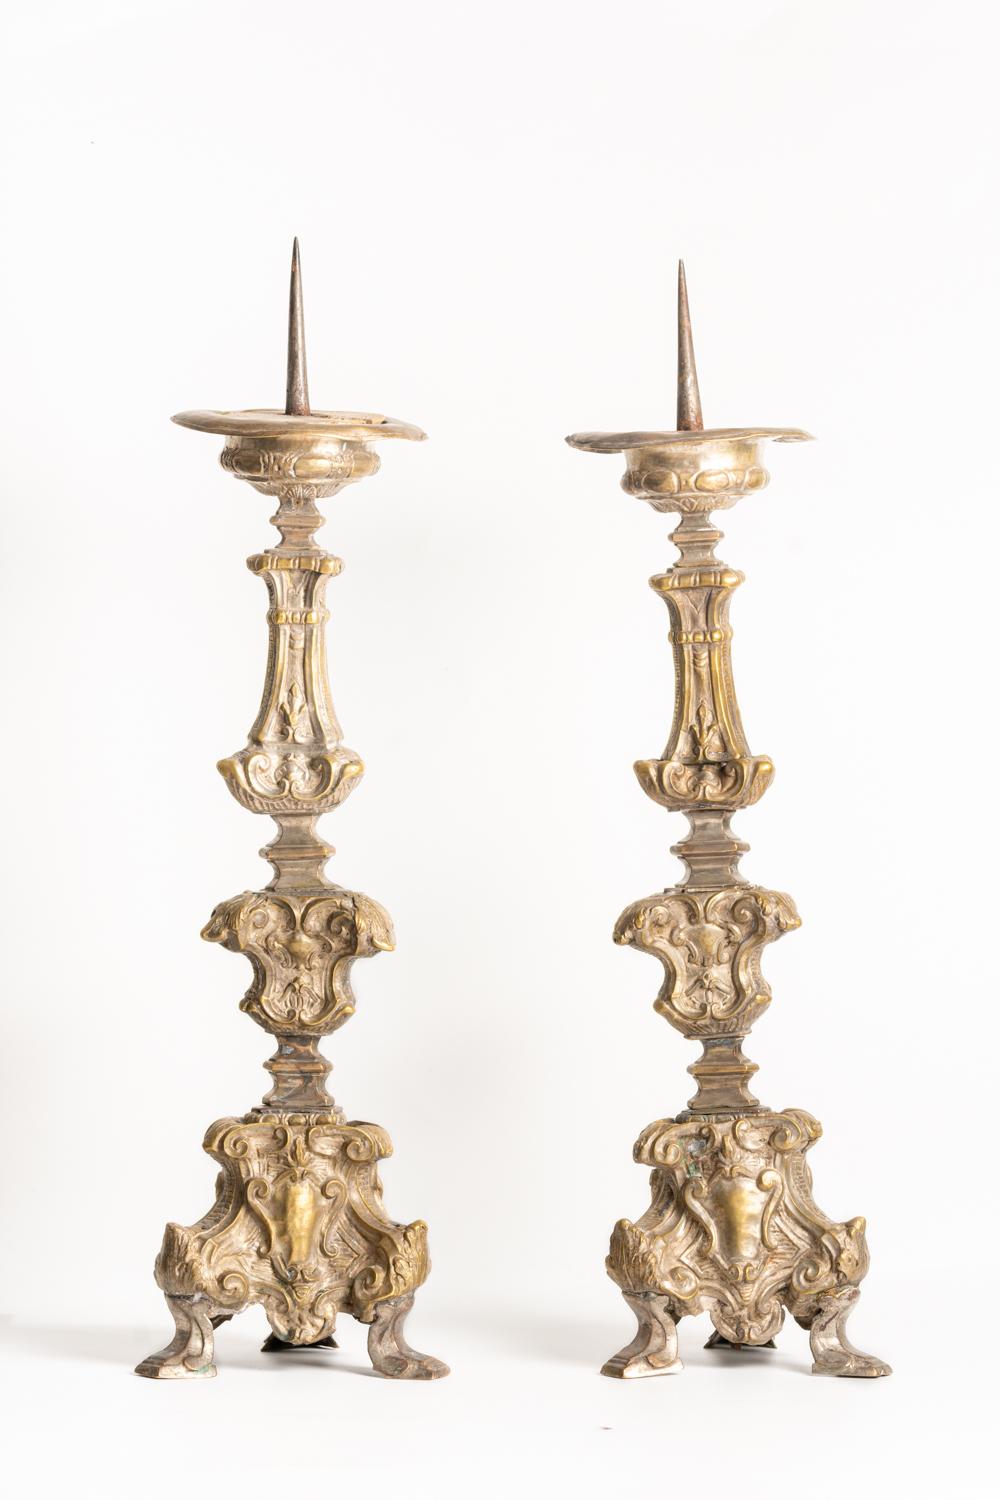 Une belle paire de chandeliers italiens en laiton du XVIIIe siècle, décorés de façon impressionnante dans un style baroque, avec des tiges en forme de pomme et des bases triformes décorées de cartouches et d'altérations de feuillage. Les colonnes